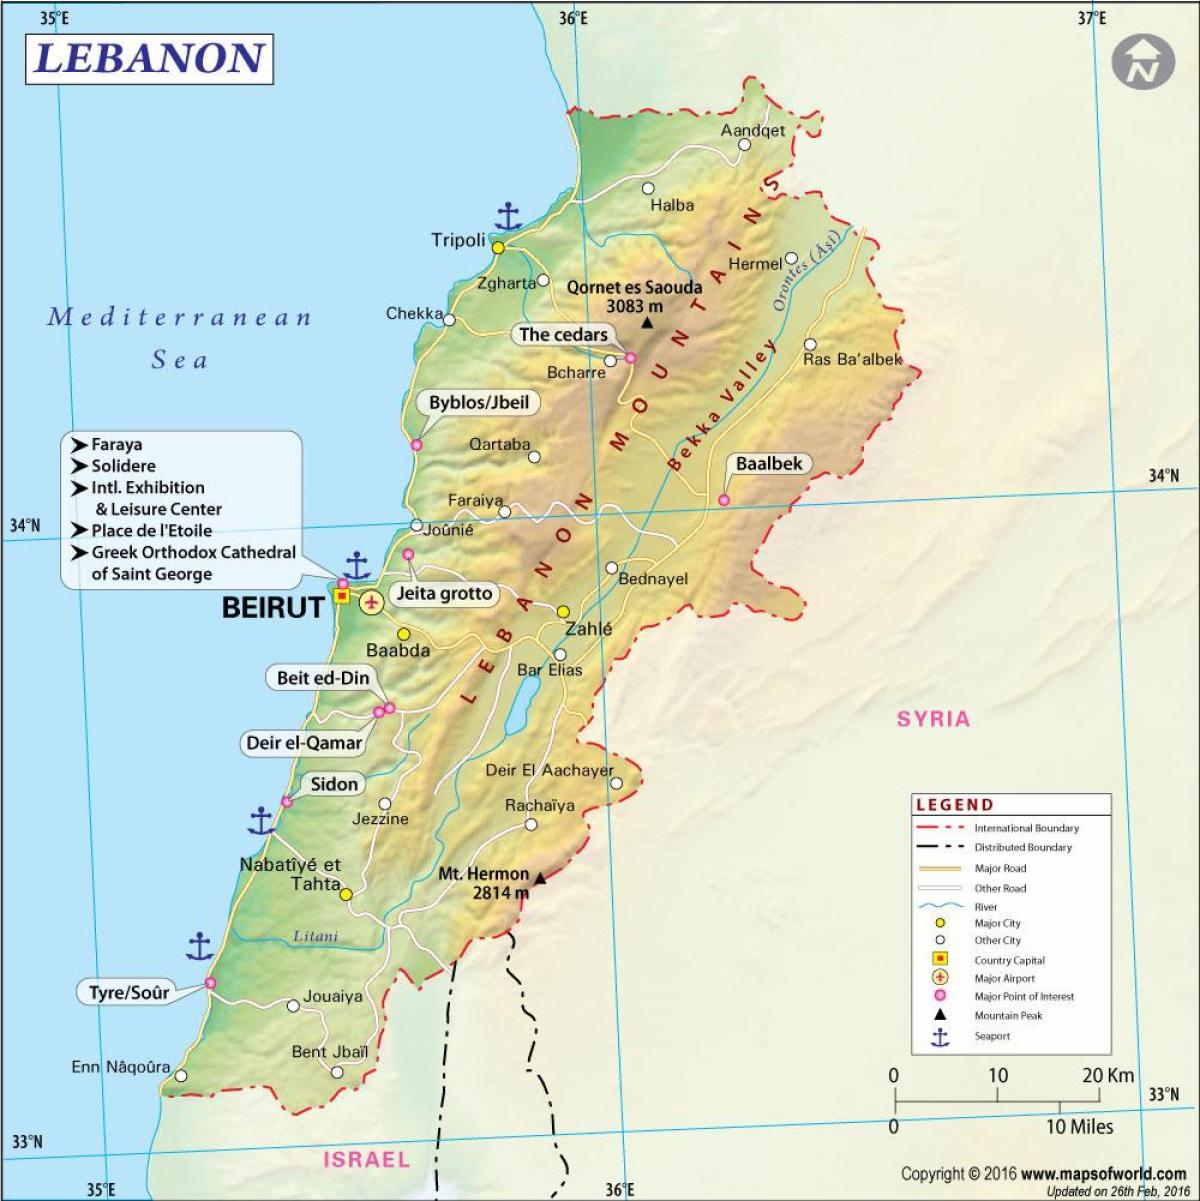 מפה של לבנון העתיקה.